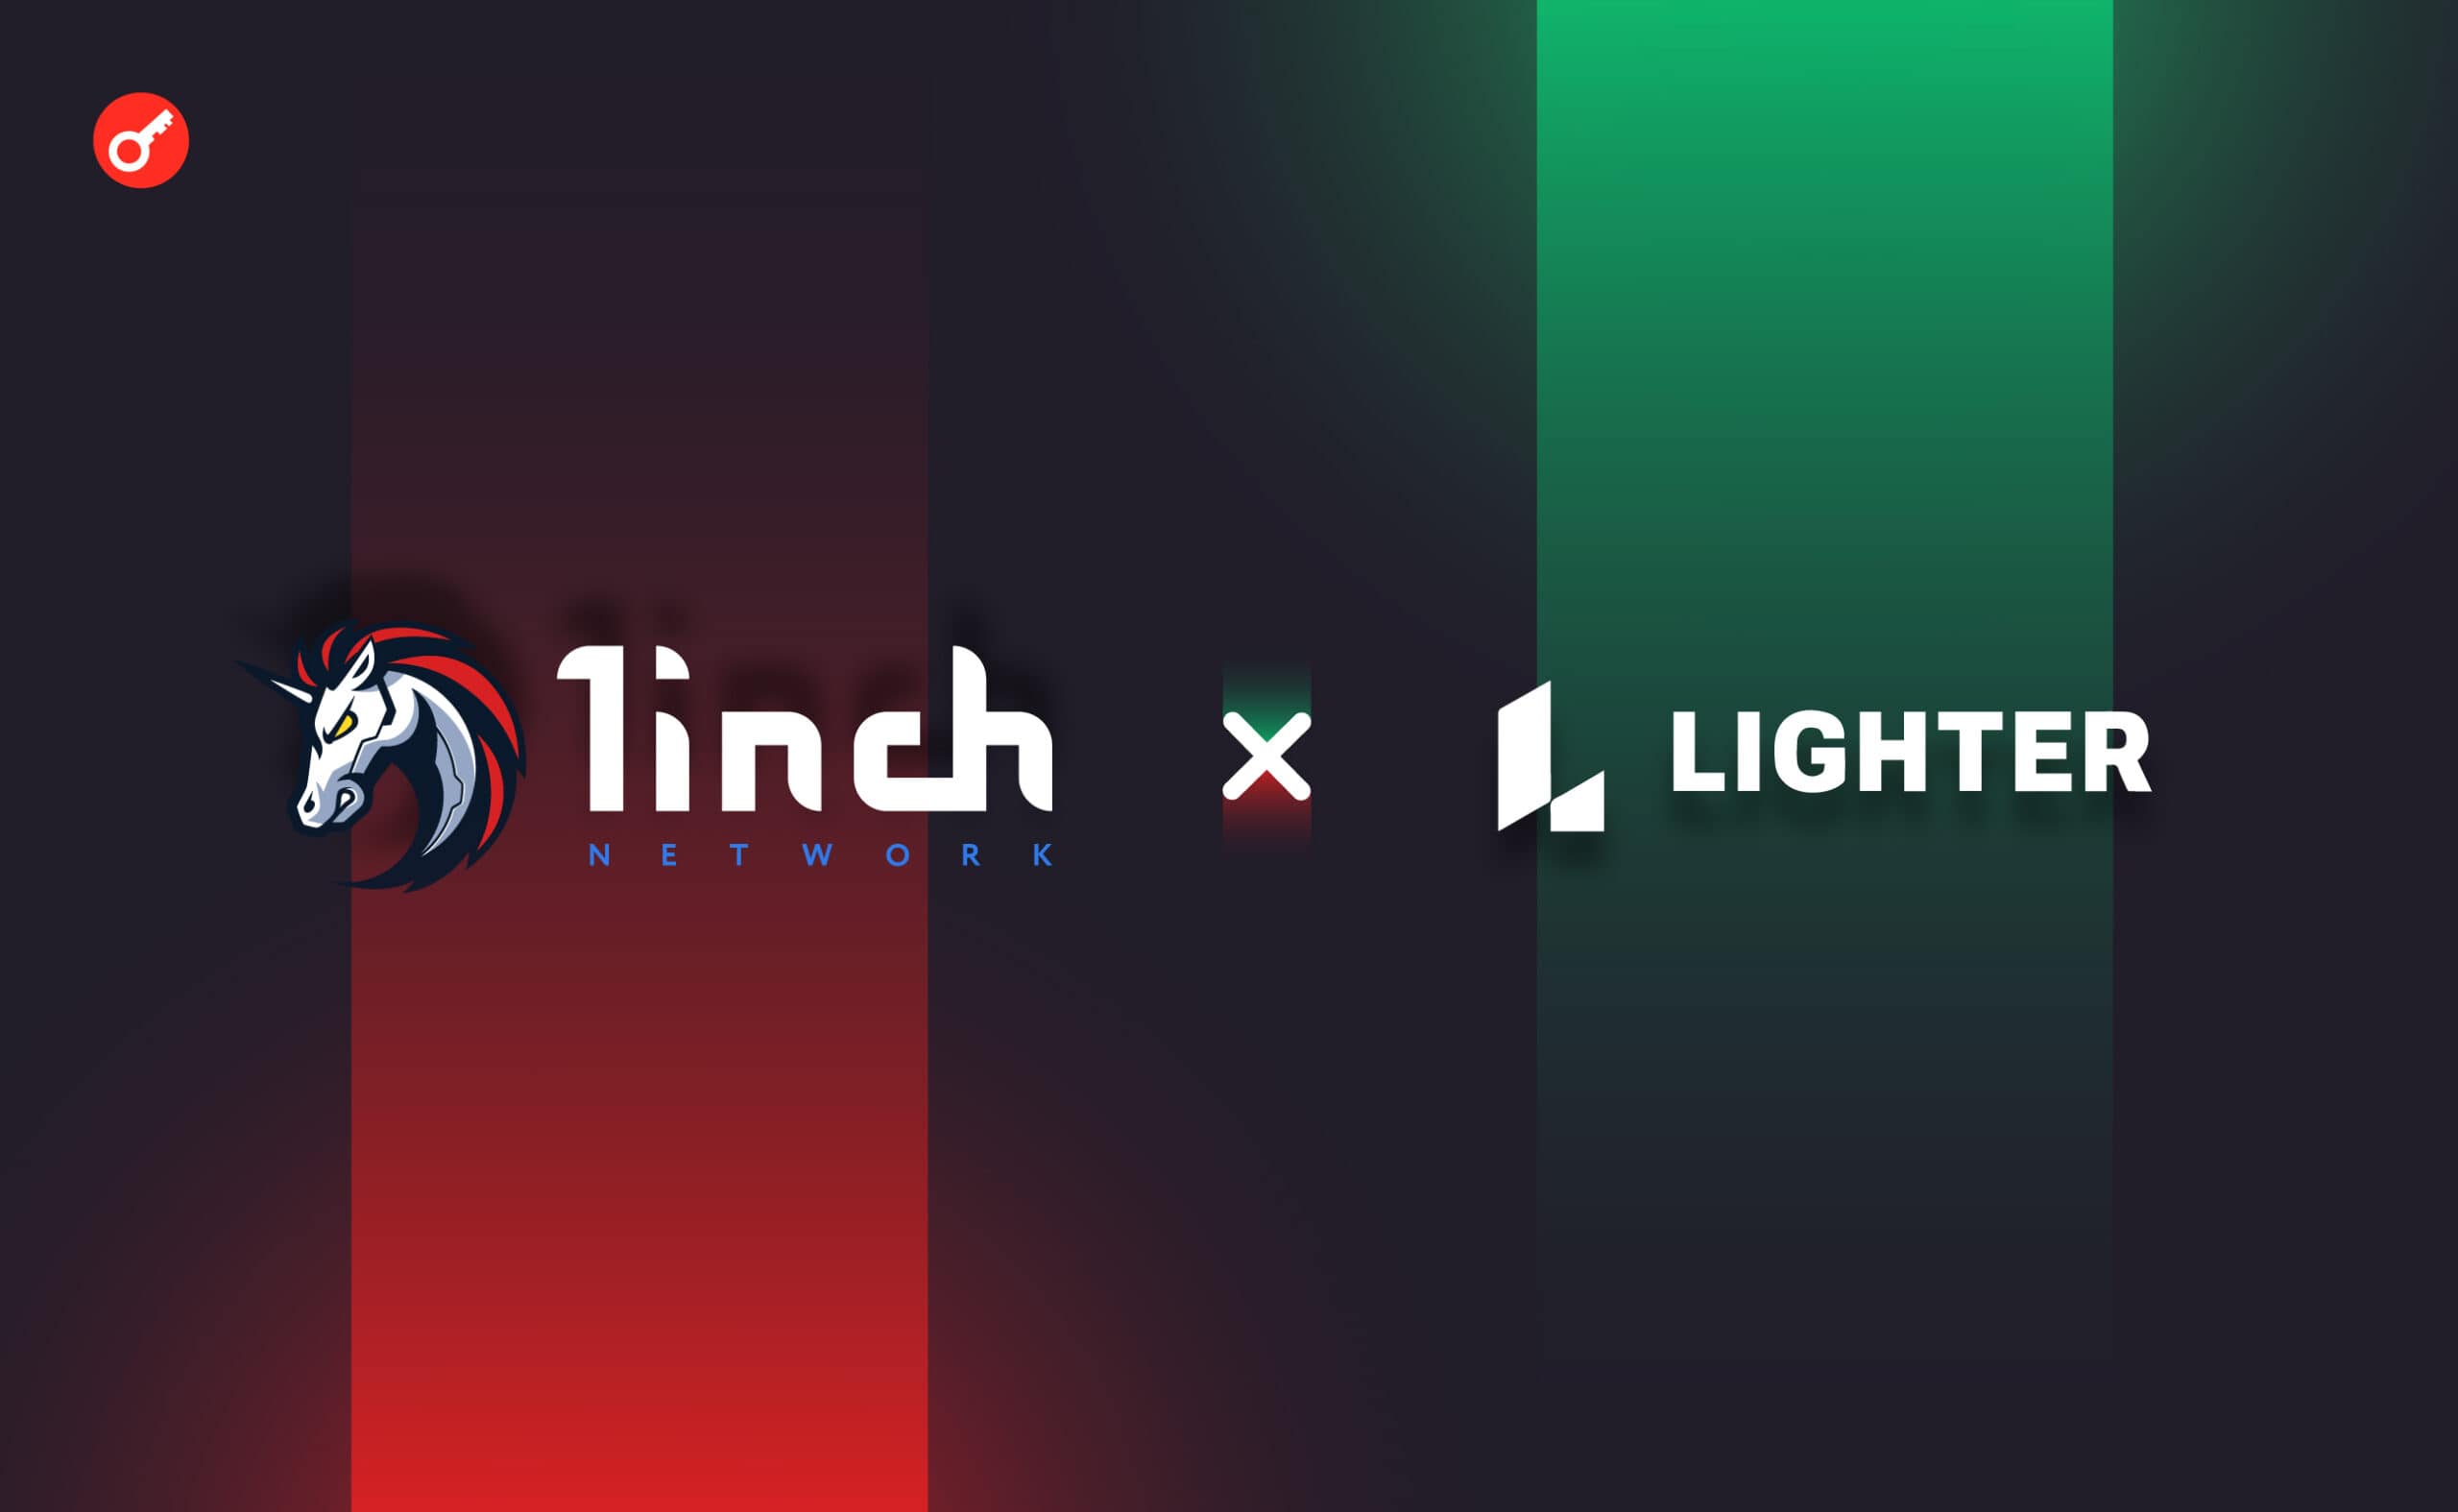 1inch Network объявили о партнерстве с Lighter.xyz. Заглавный коллаж новости.